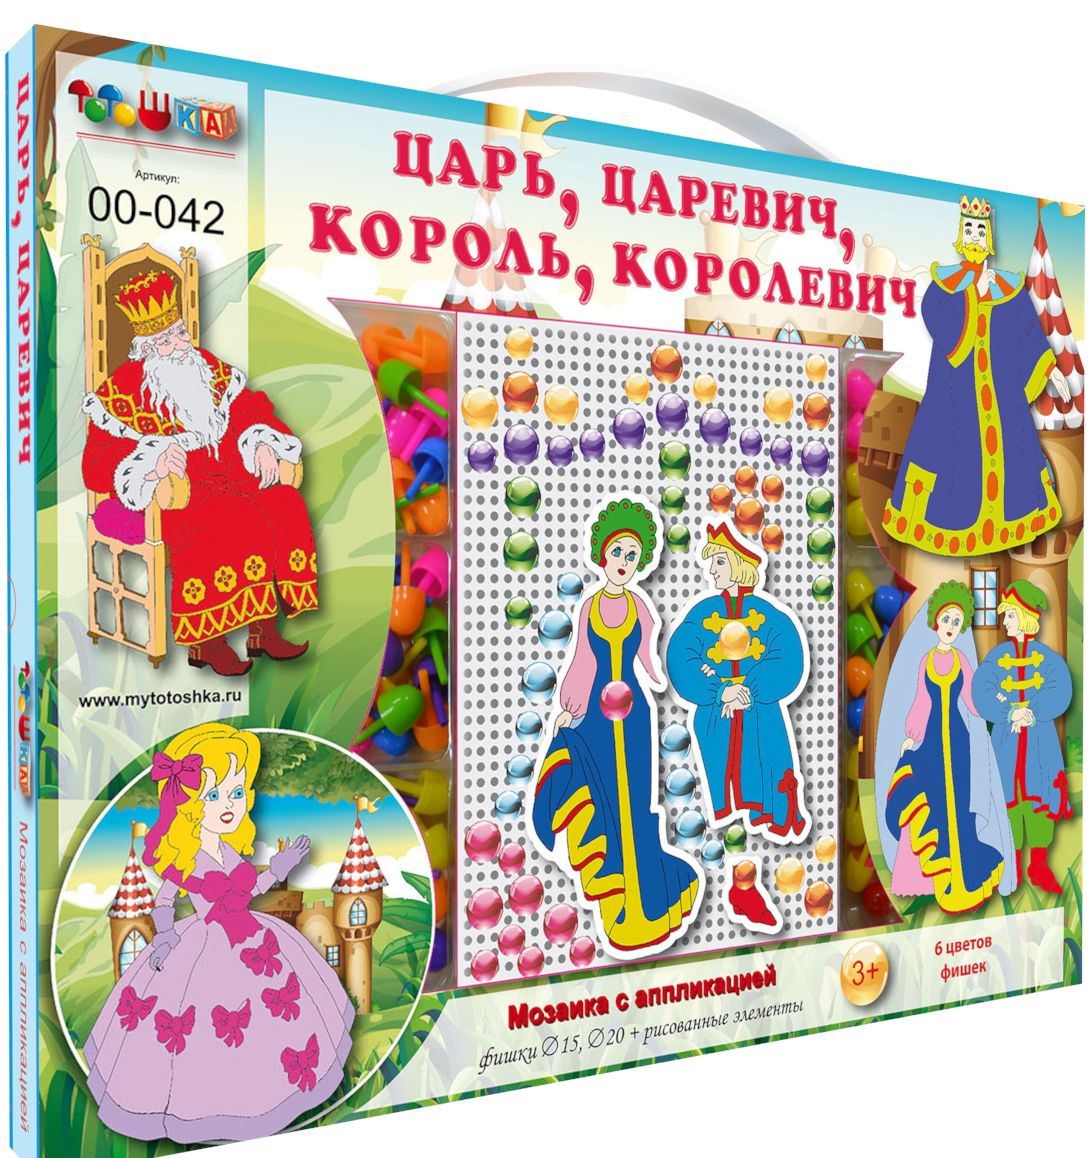 Детская мозаика с аппликациями Царь, Царевич, Король, Королевич 00-042 Тойс-Юнион тото